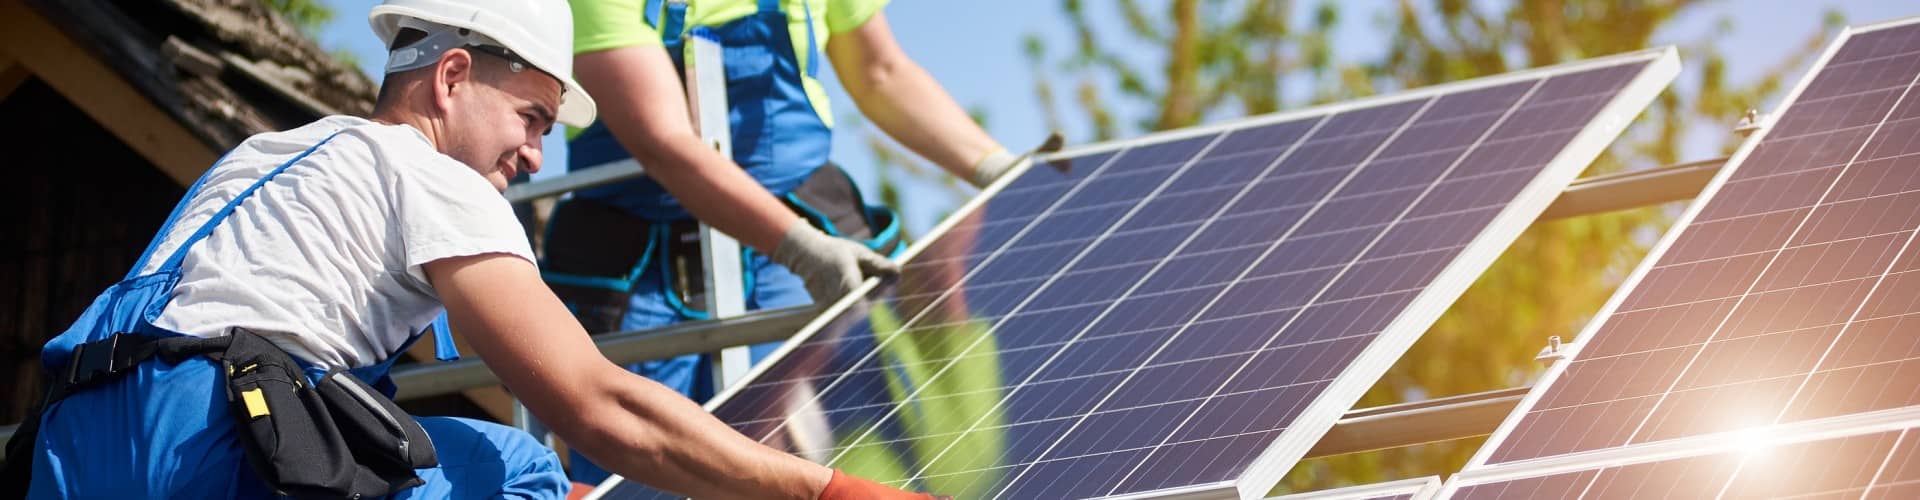 7 avantages à installer des panneaux solaires photovoltaïques